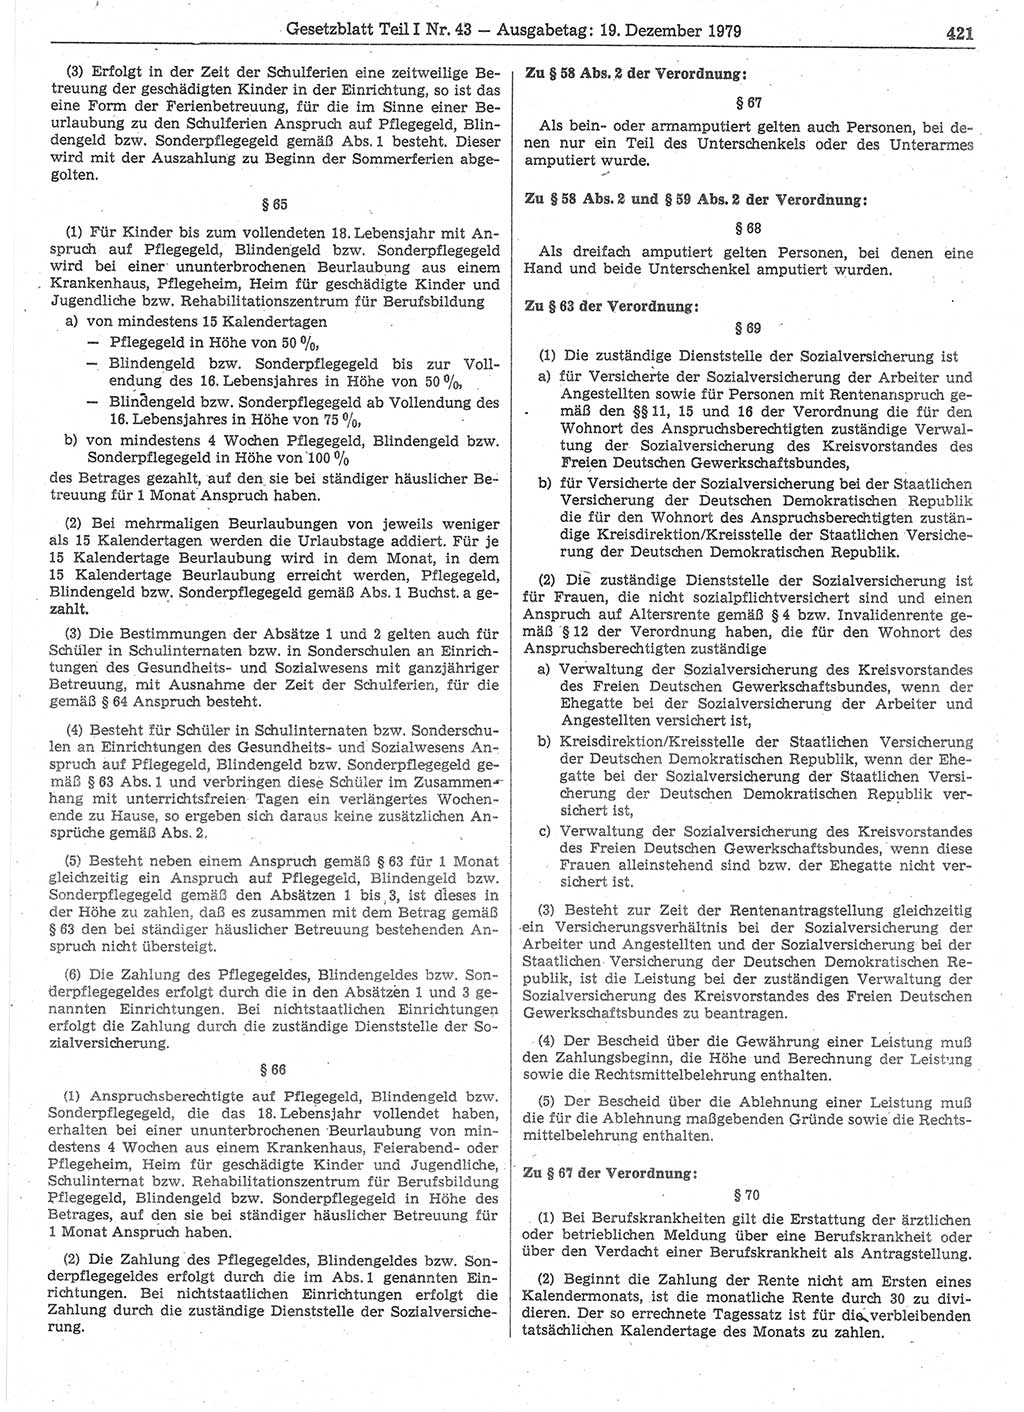 Gesetzblatt (GBl.) der Deutschen Demokratischen Republik (DDR) Teil Ⅰ 1979, Seite 421 (GBl. DDR Ⅰ 1979, S. 421)